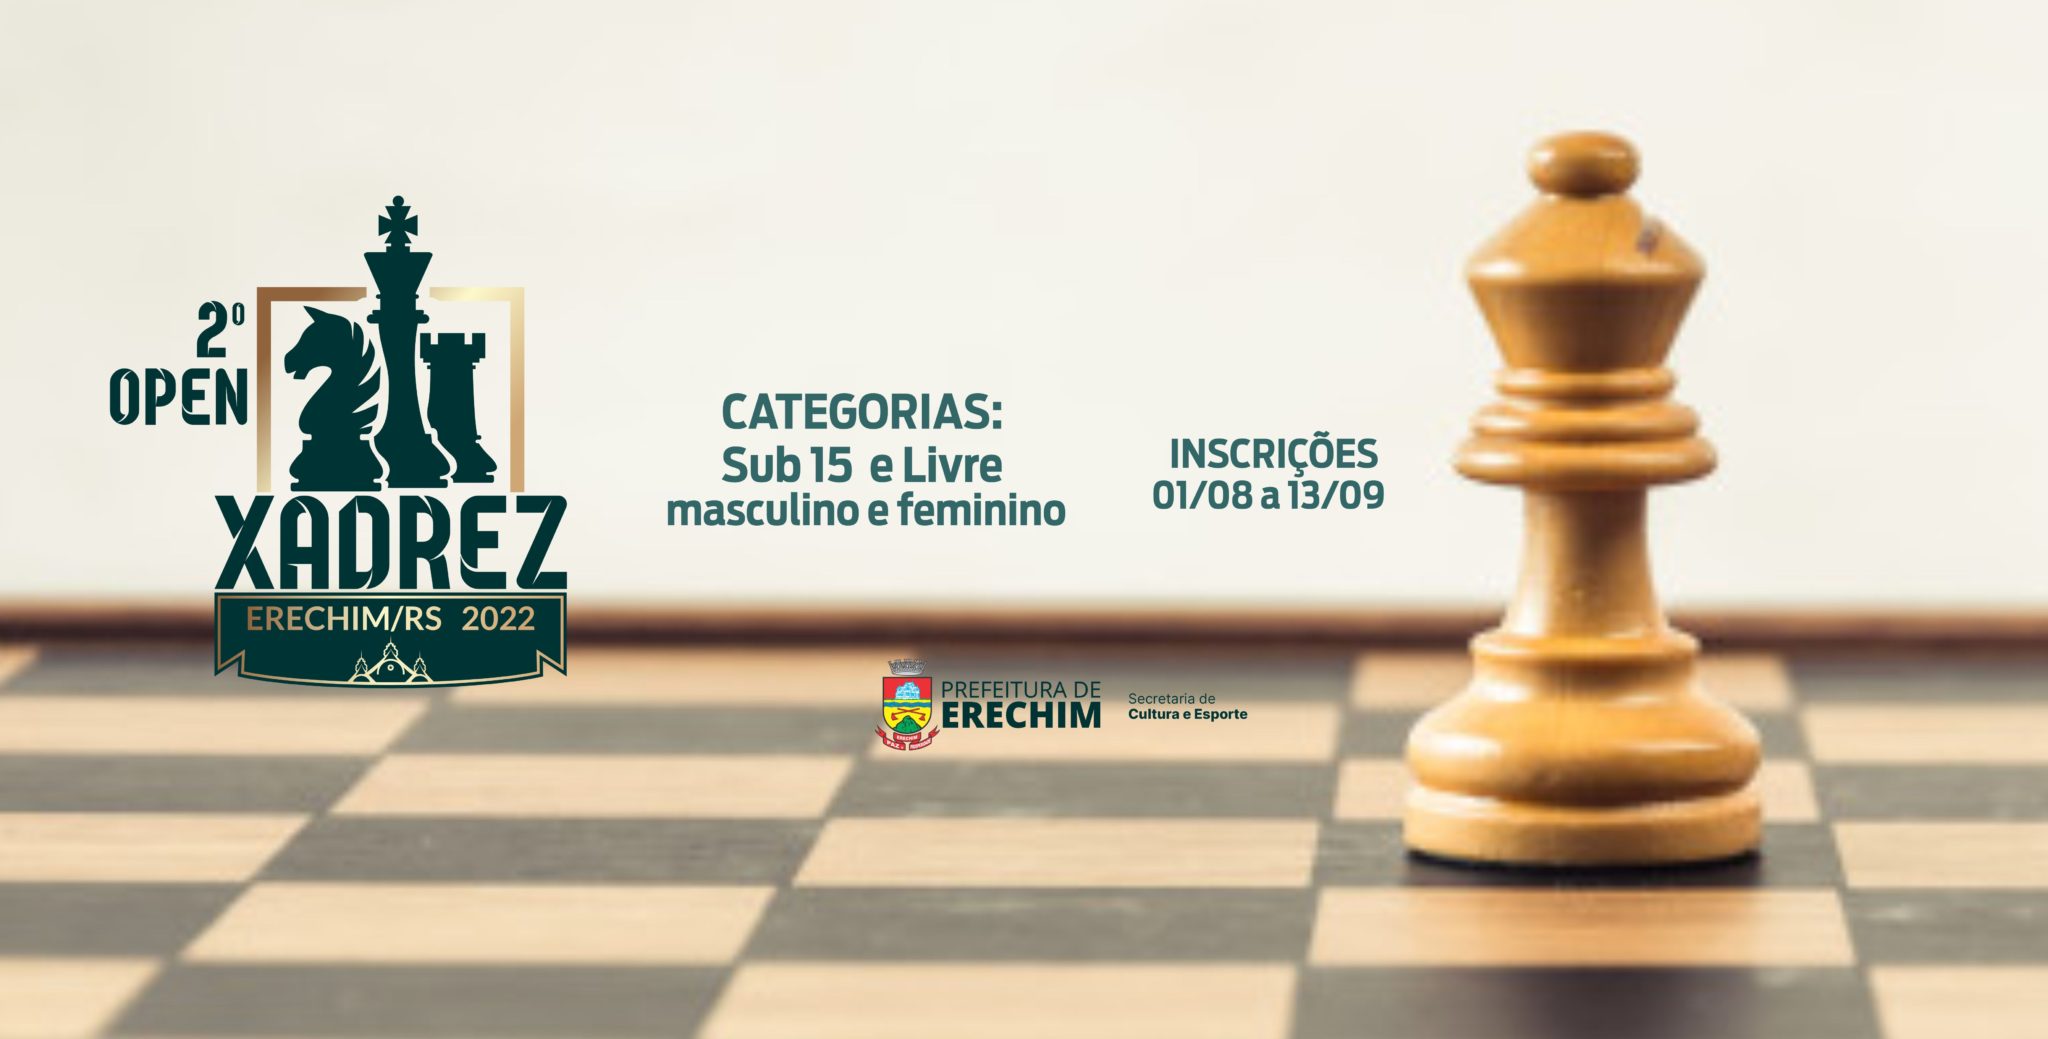 Conheça o xadrez 2022 